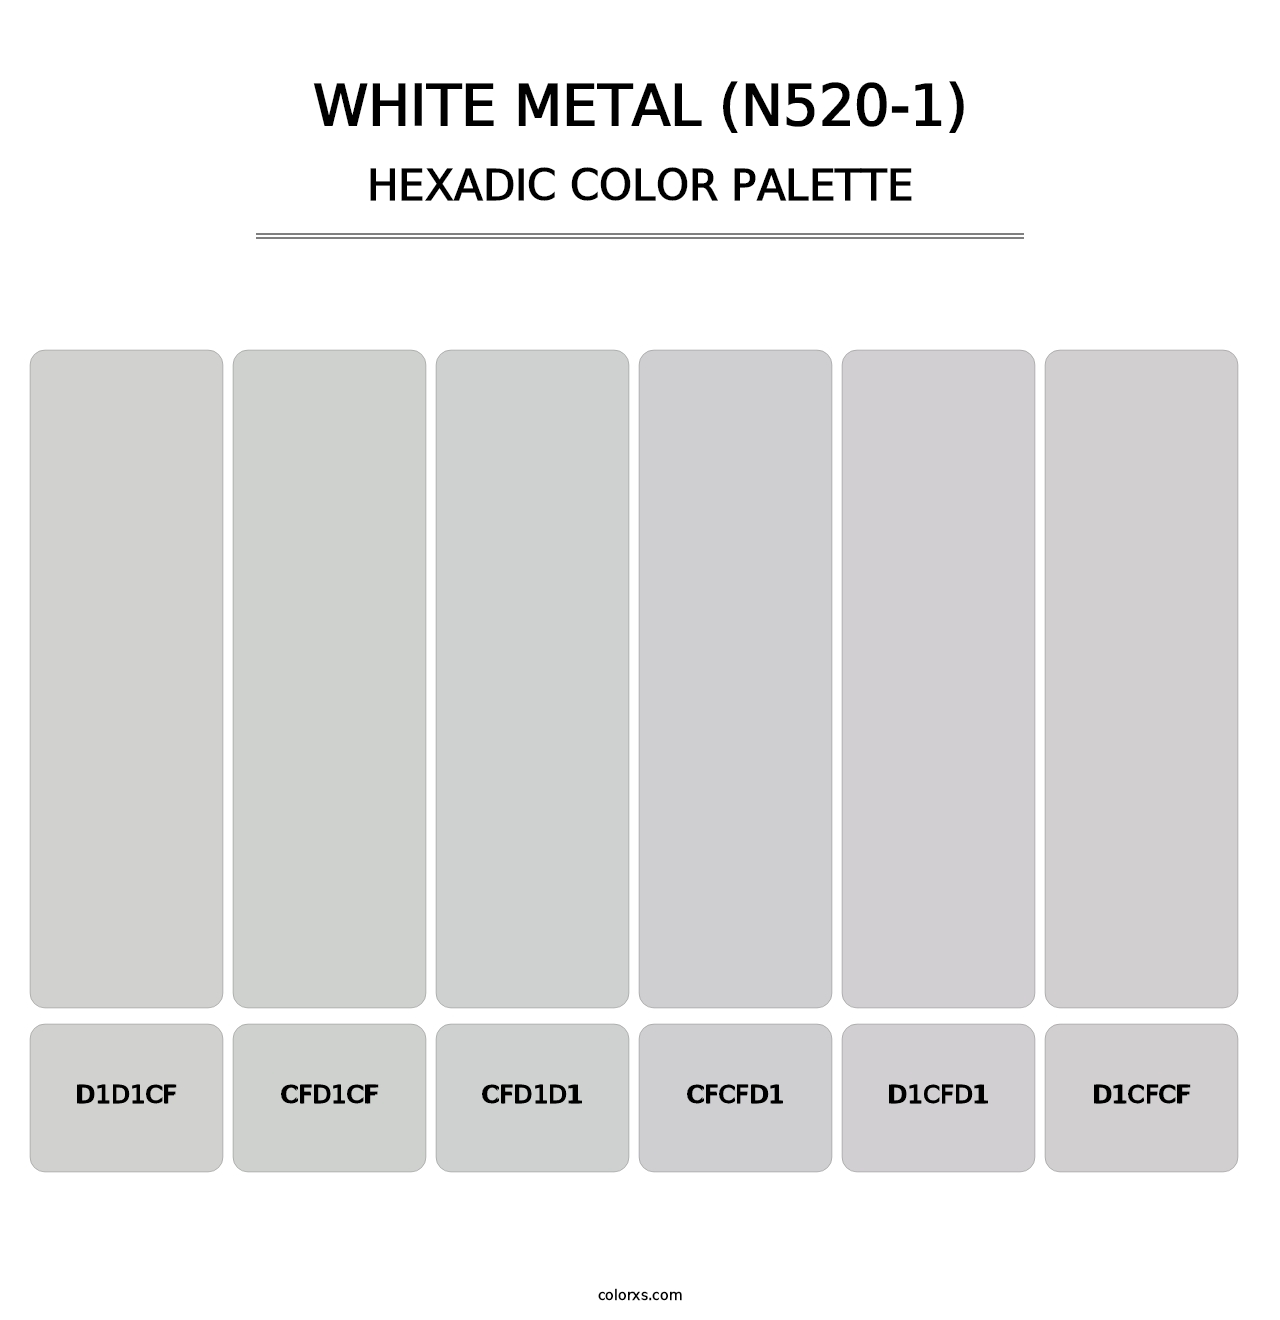 White Metal (N520-1) - Hexadic Color Palette